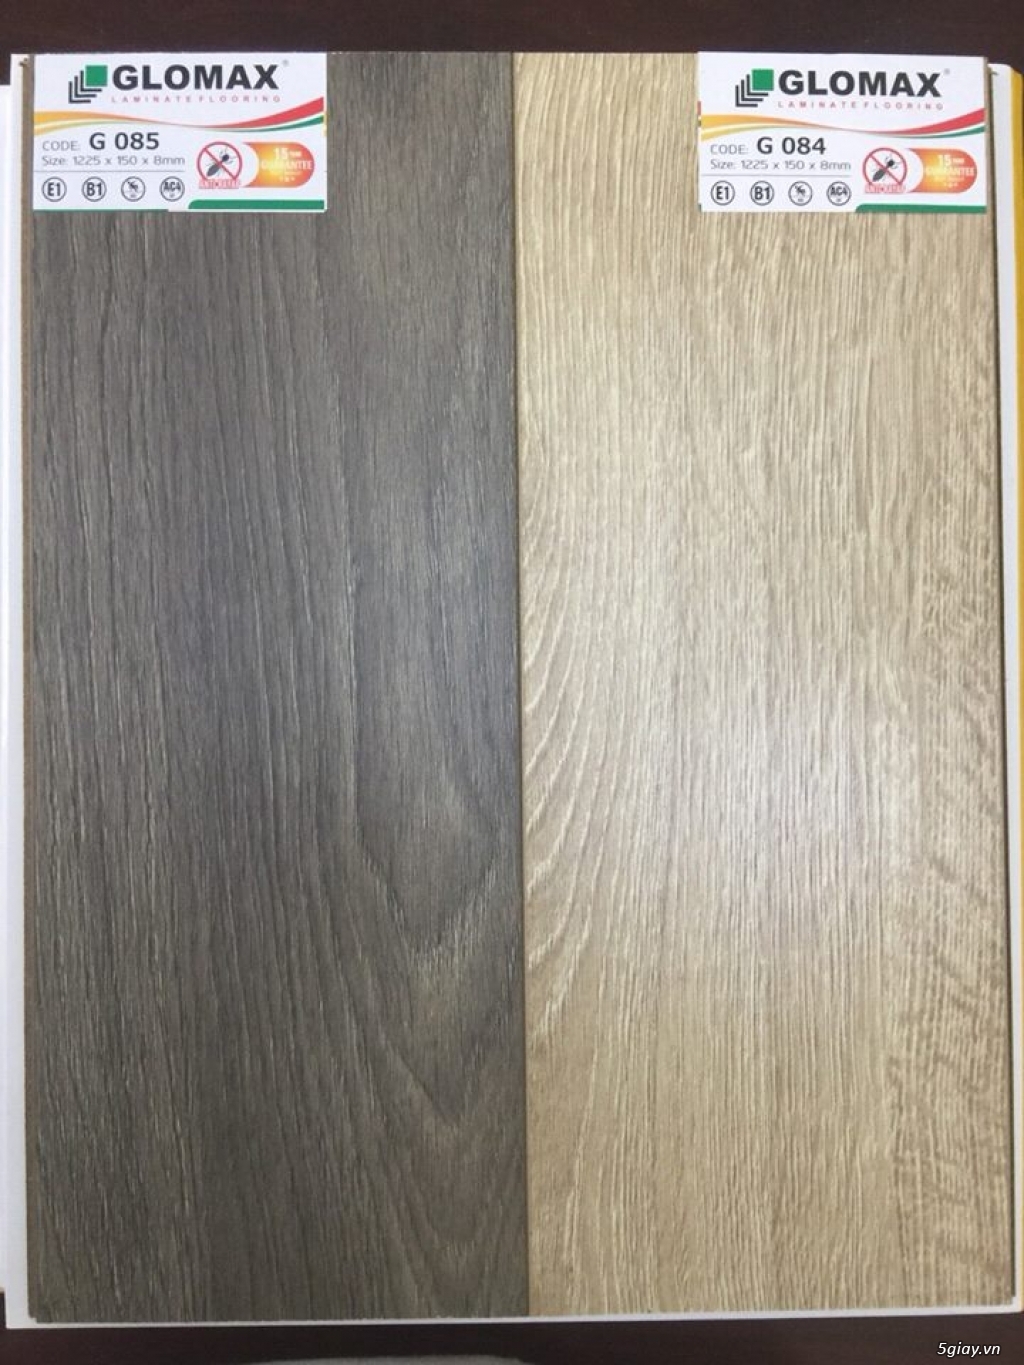 Sàn gỗ giá rẻ chất lượng